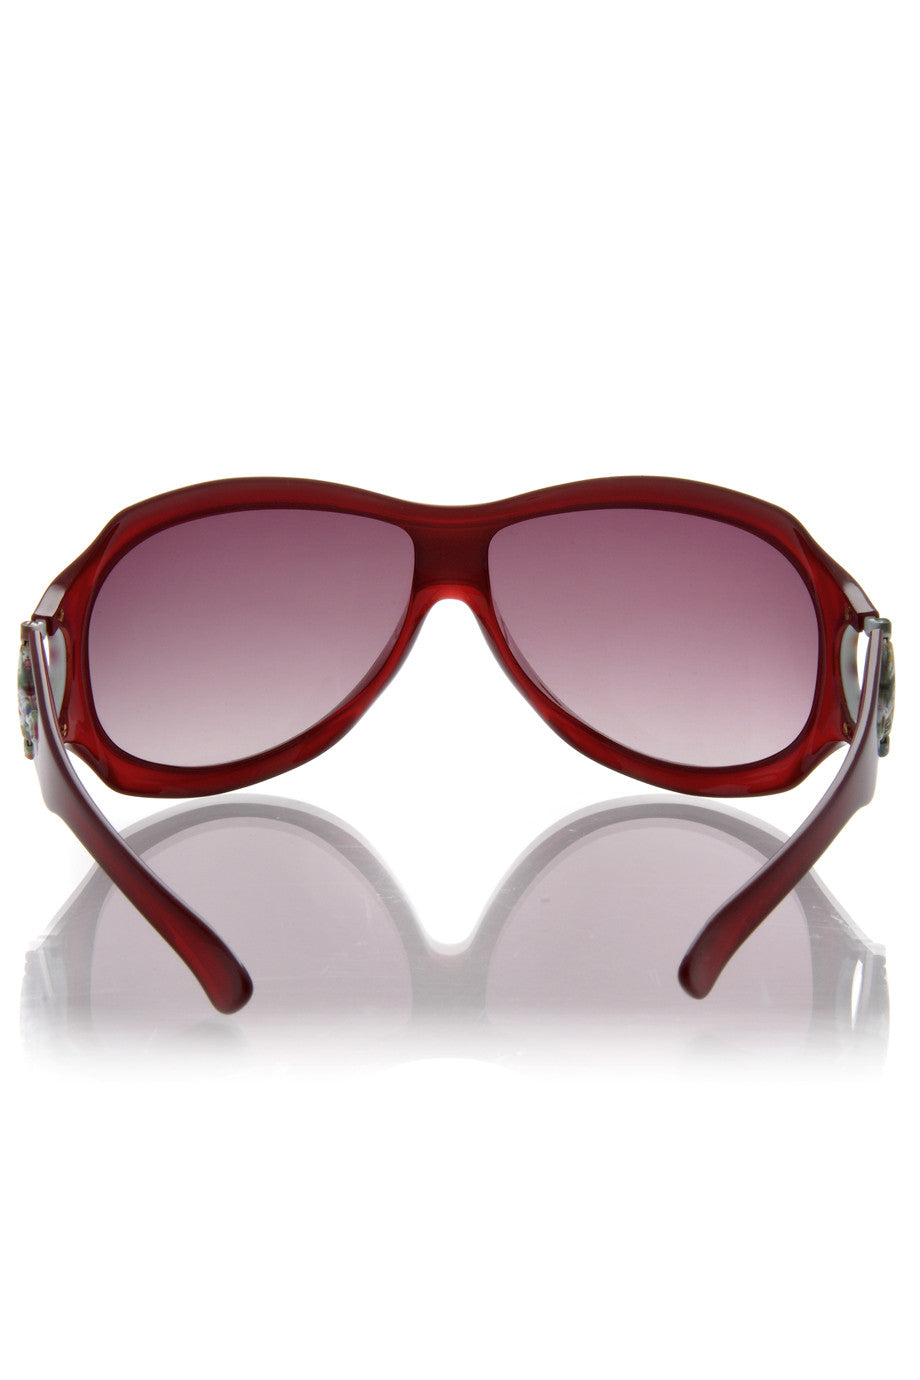 Κόκκινα Γυαλιά Ηλίου - Gucci 2900 | Γυναικεία Γυαλιά Ηλίου